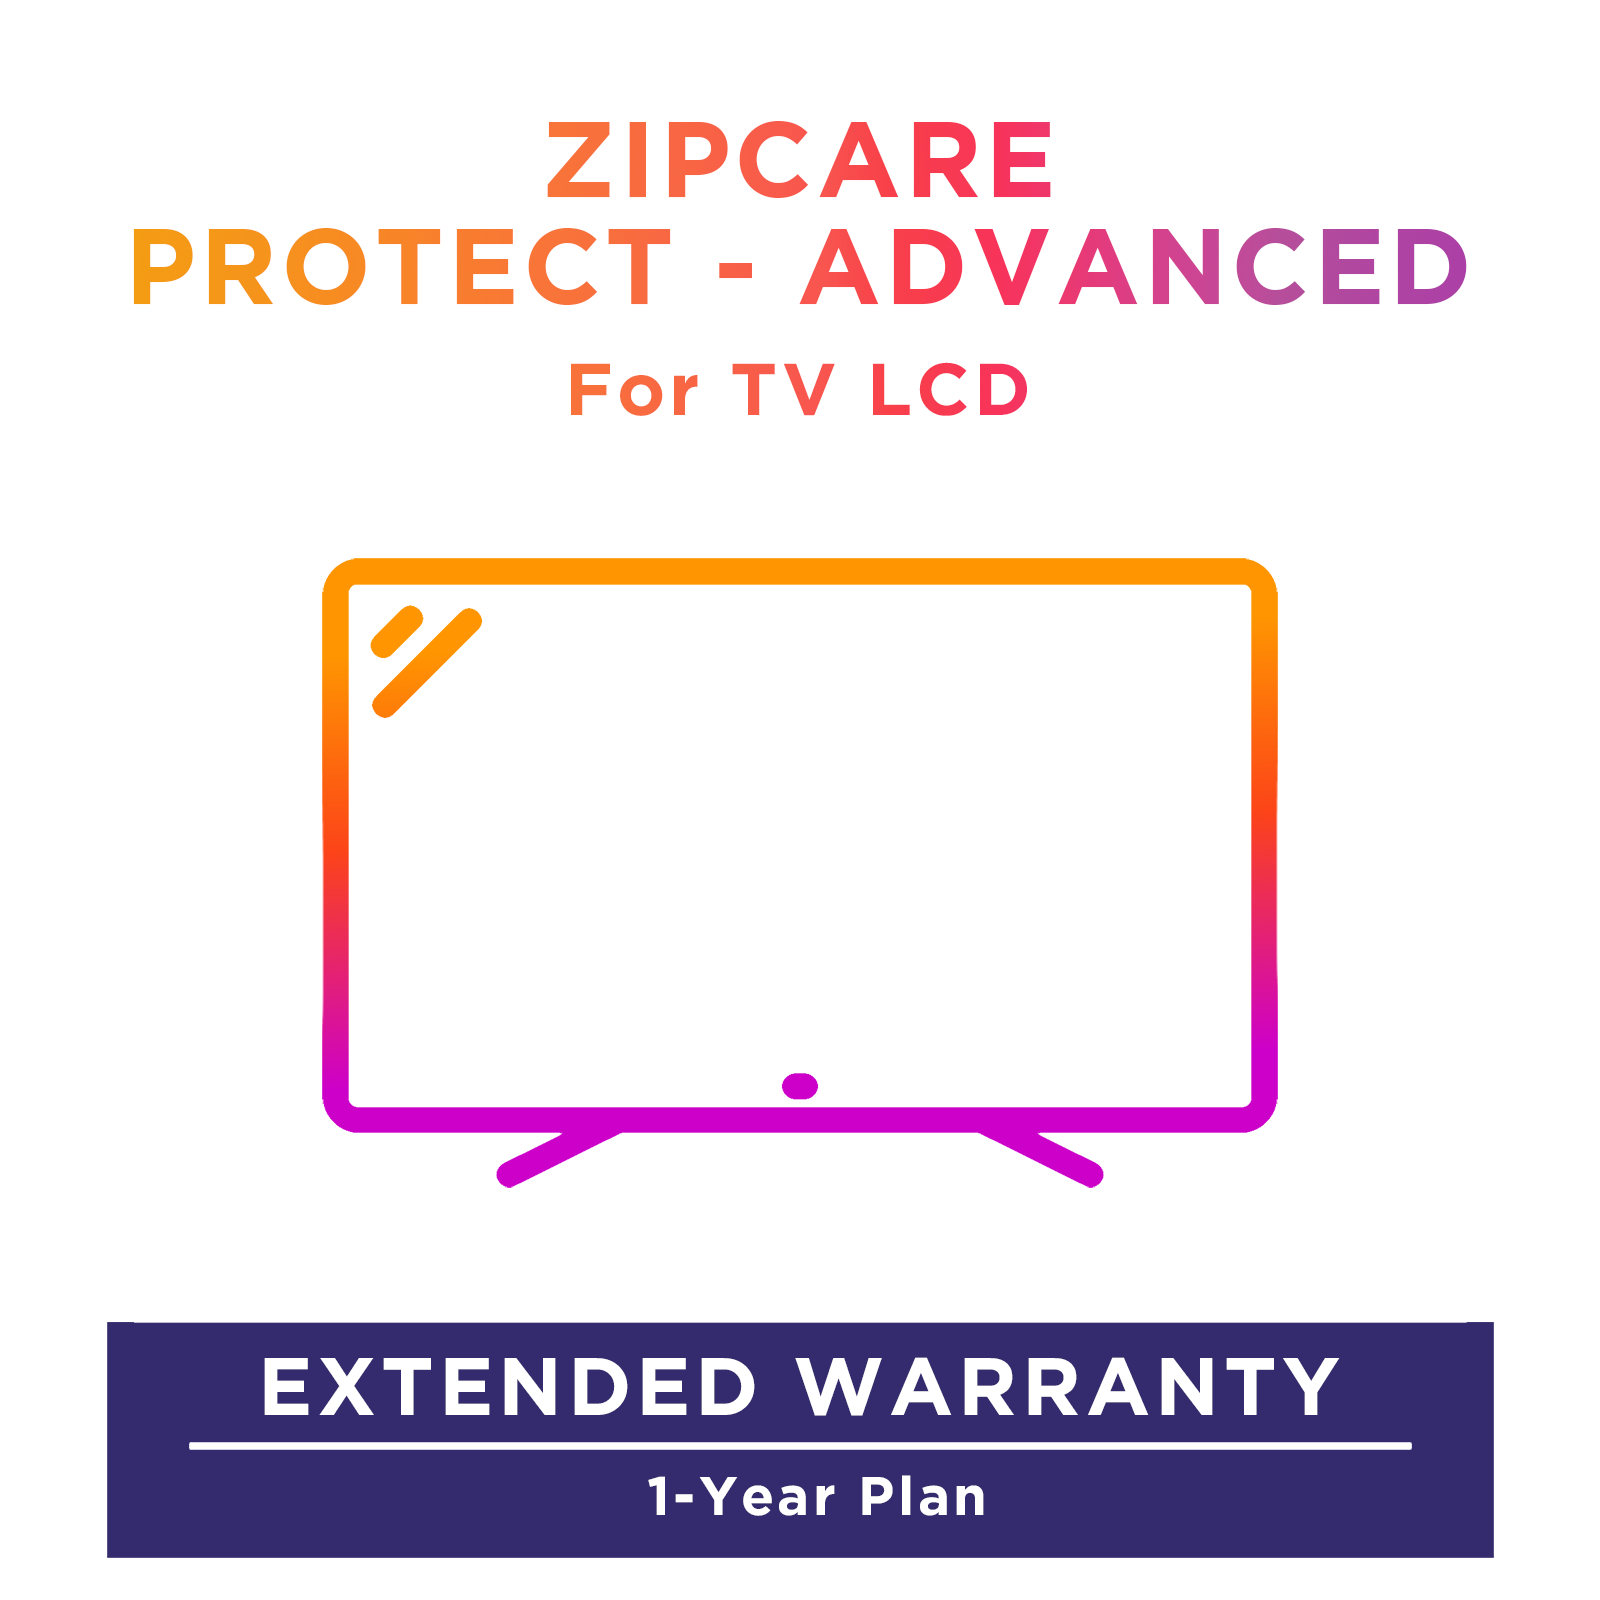 LG LQ63 32 inch Smart TV